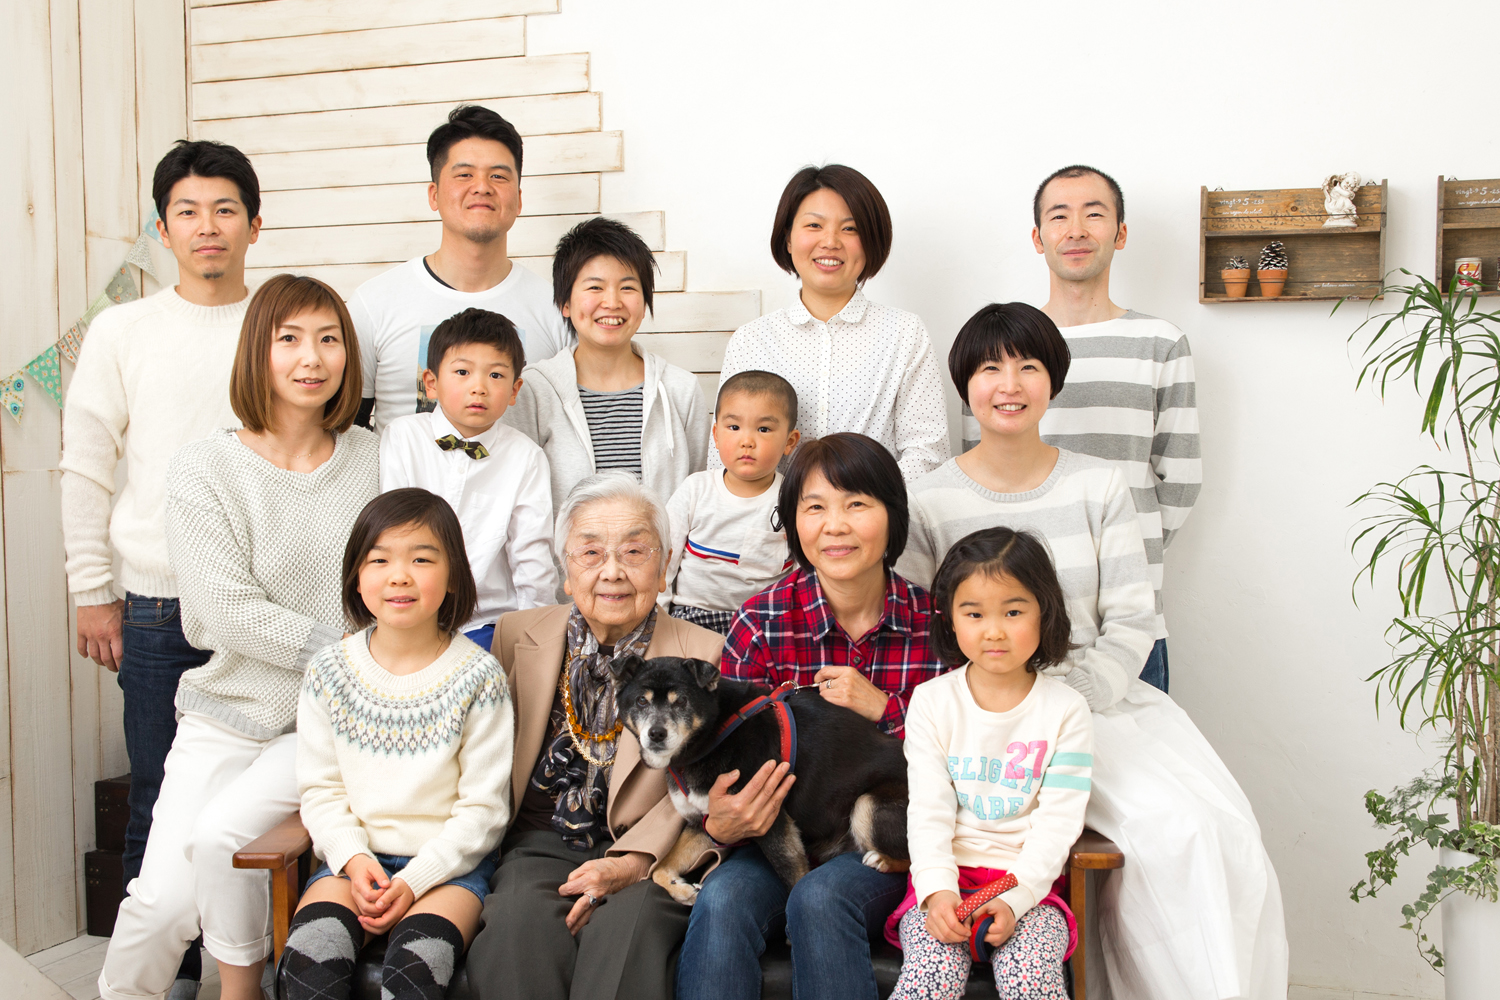 おじいちゃんおばあちゃんフォトギャラリー 家族の写真館 日々是好日 習志野市 船橋市 フォトスタジオ